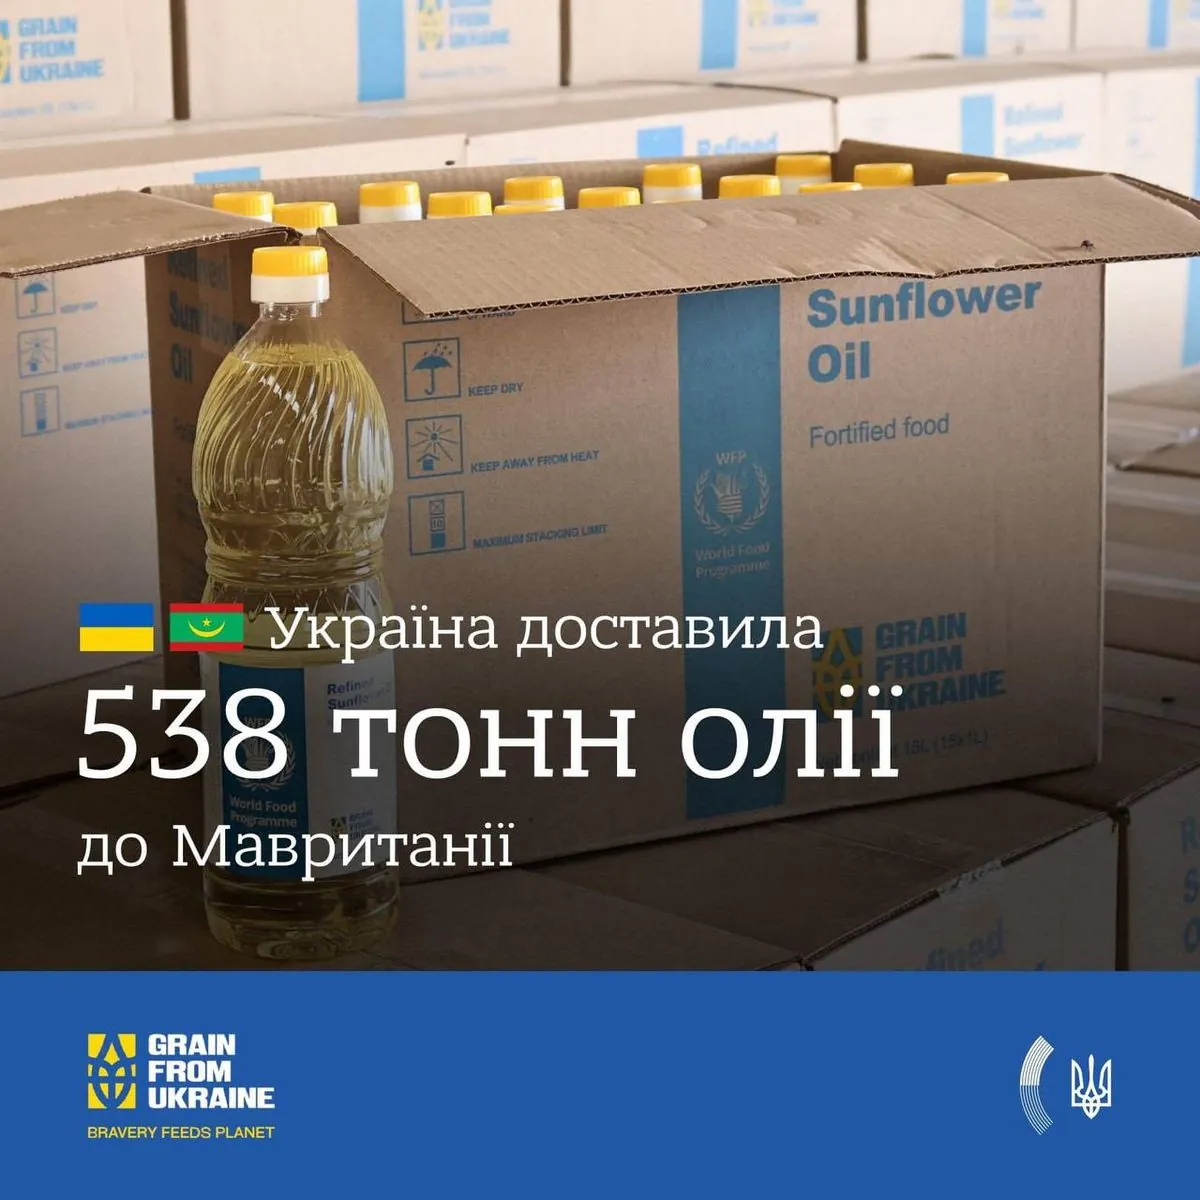 grain-from-ukraine-ukraina-postavila-538-tonn-masla-v-mavritaniyu